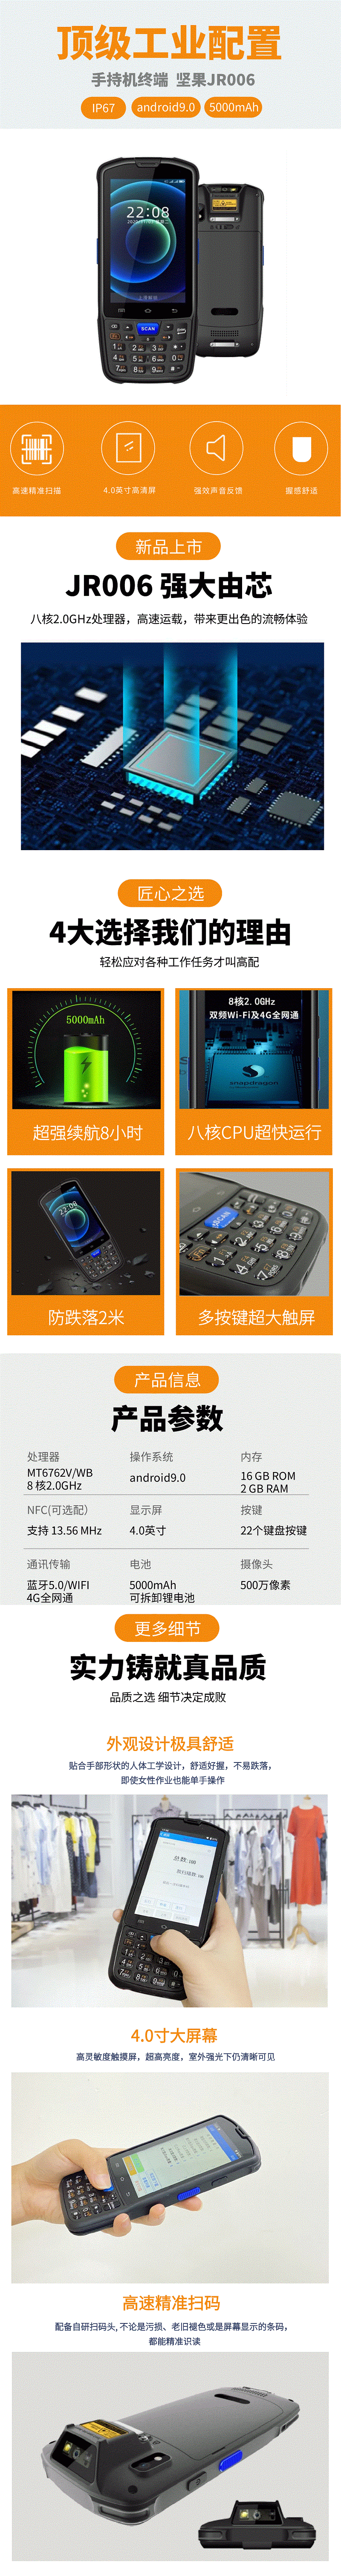 坚果JR006-OCR手持机-快递驿站OCR识别手持机